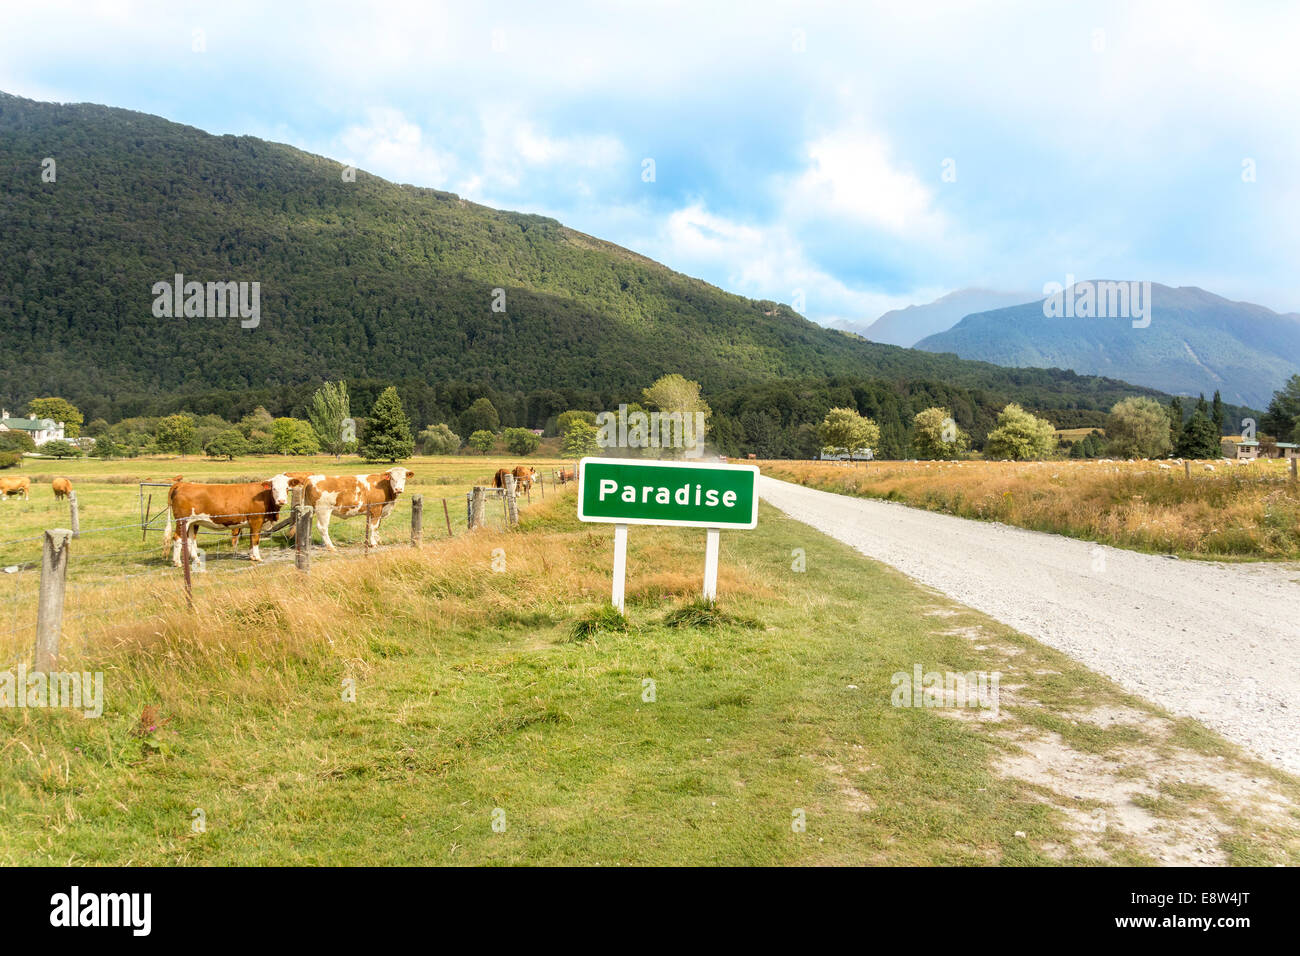 Il paradiso è una pastorale luogo rurale nella regione di Otago dell'Isola Sud della Nuova Zelanda. Cartello stradale vacche guardando la fotocamera storm brewing. Foto Stock